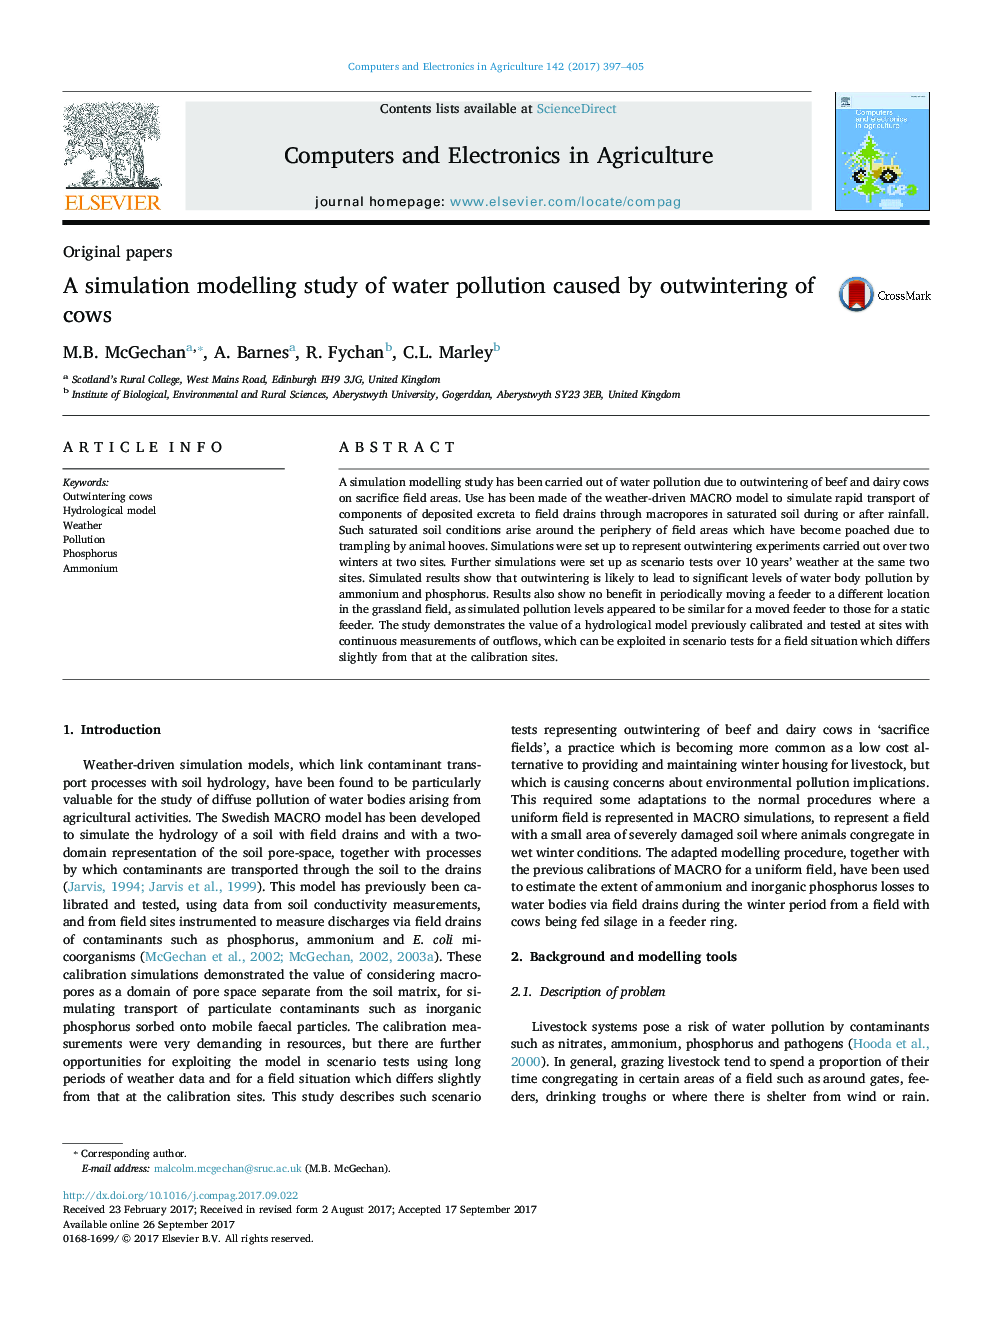 مقالات اصلی: مطالعه مدلسازی شبیه سازی آلودگی آب ناشی از بی نظمی گاوها